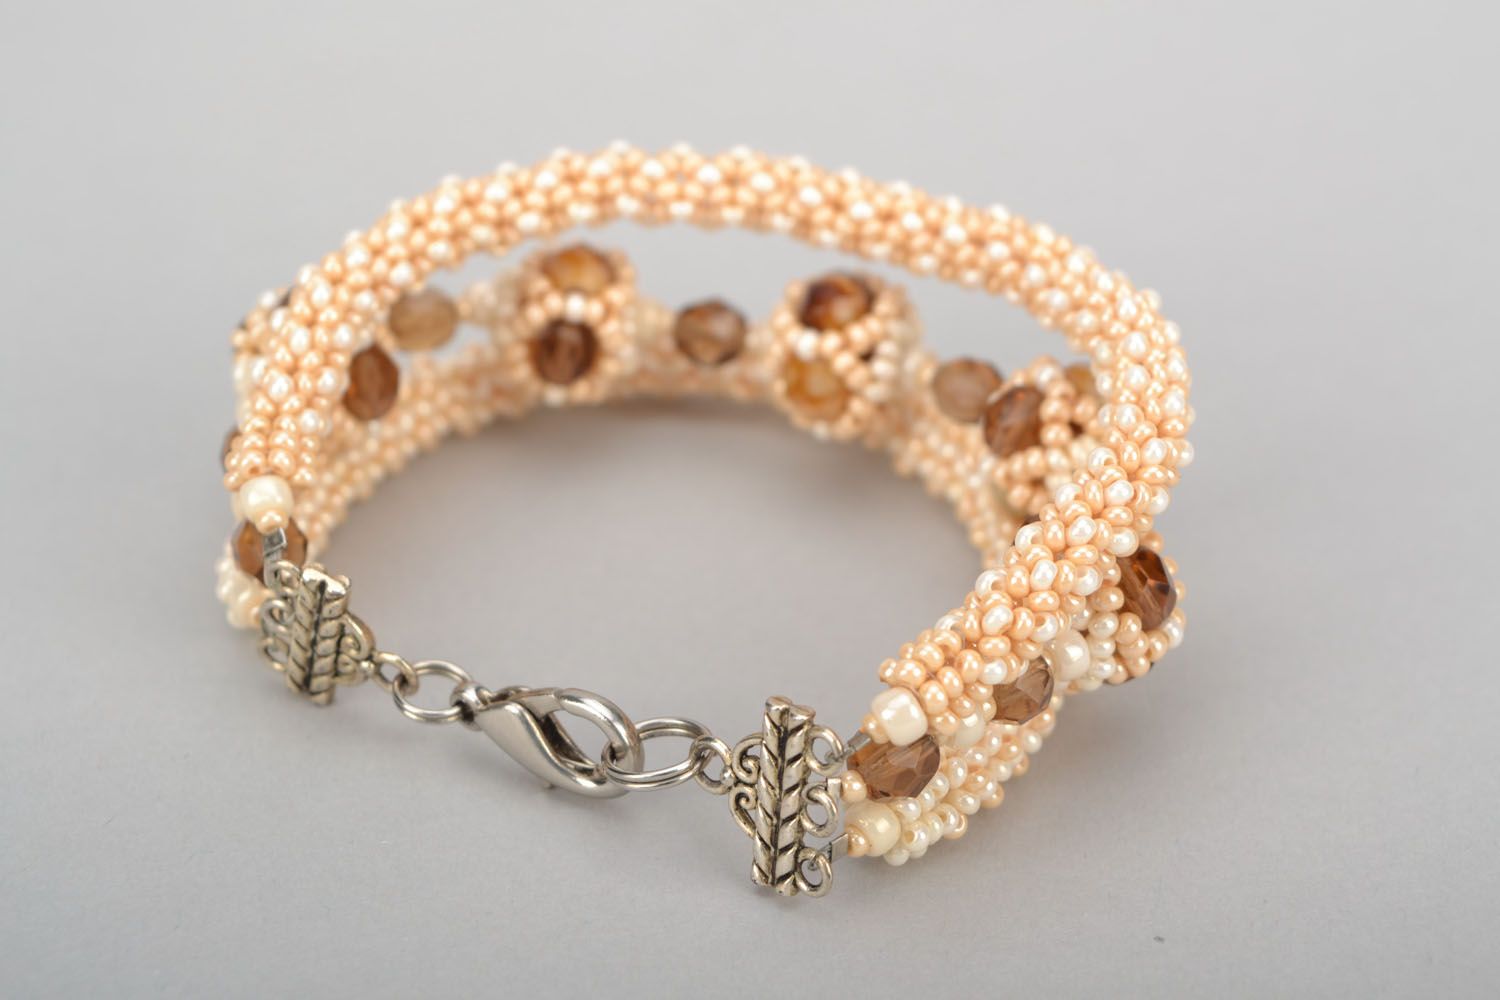 Caramel beads chain charm bracelet for girl photo 5